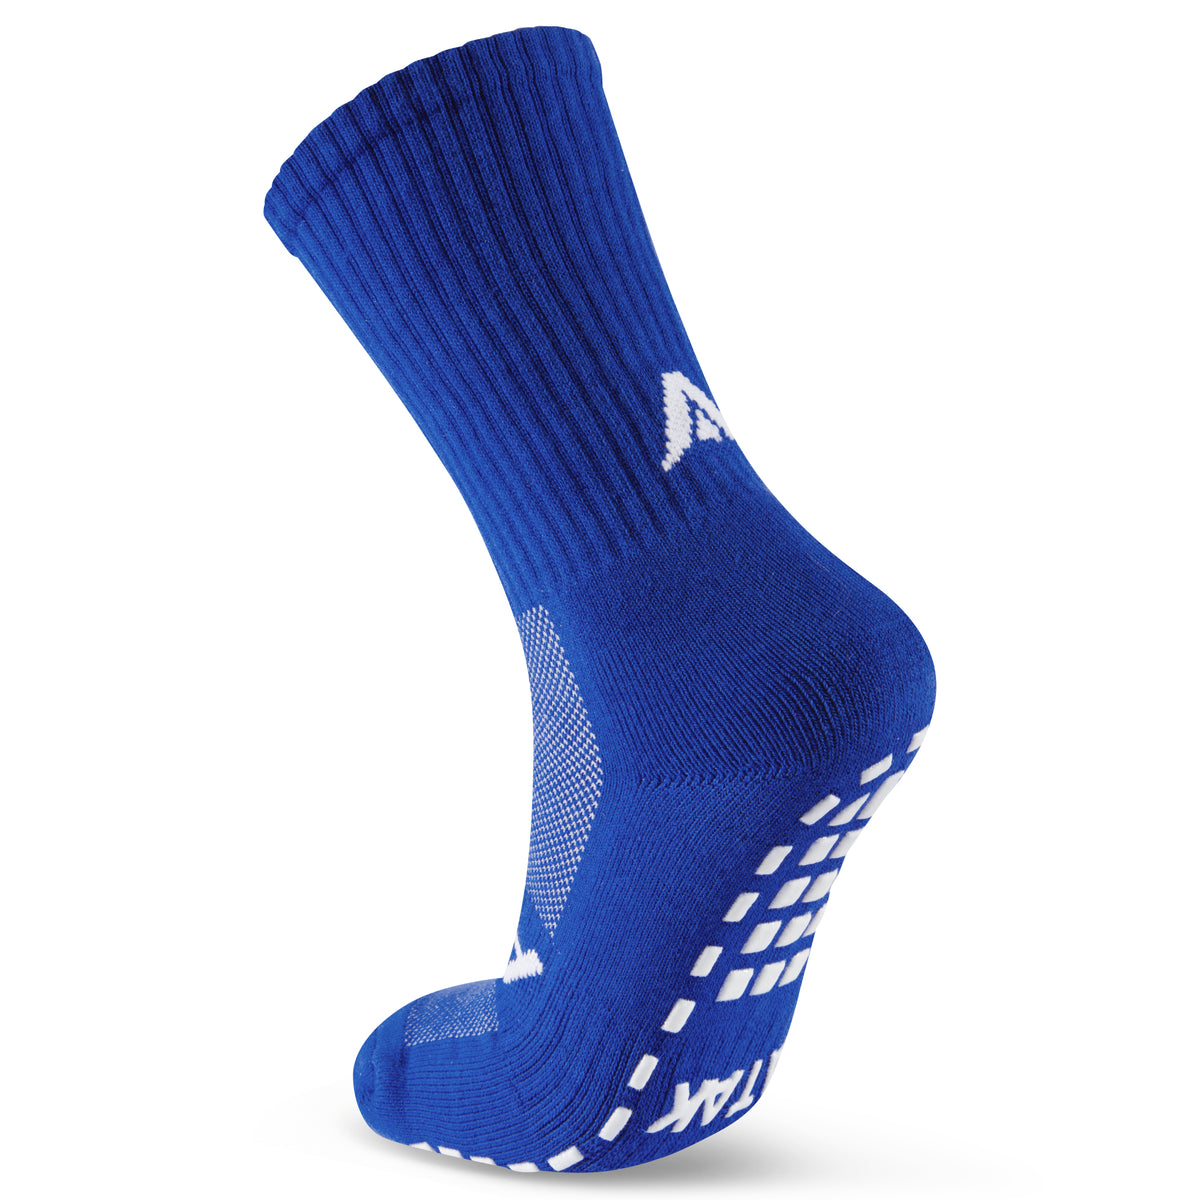 Cushion Grip Socks - Blue Pack